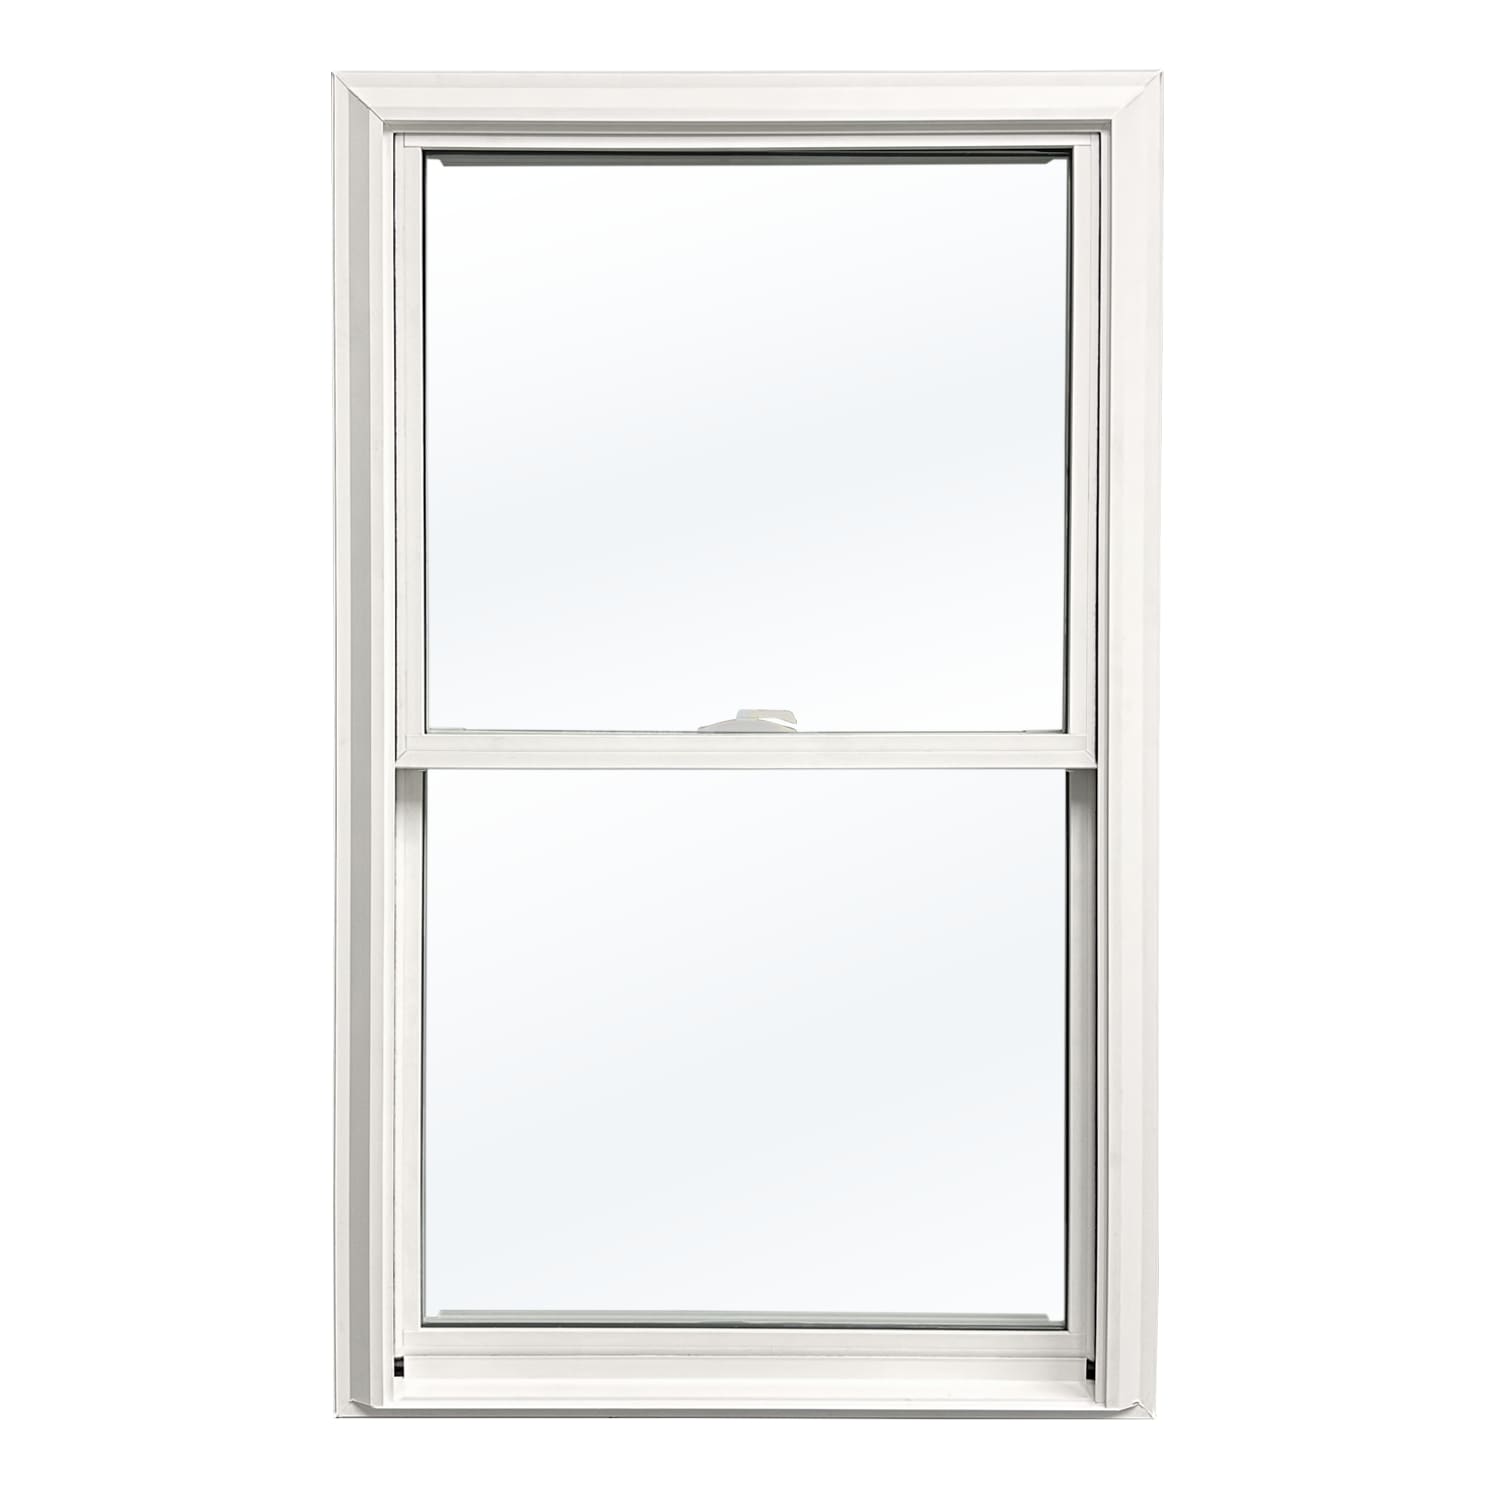 United Window & Door PRO Series Replacement 27-3/4-in x 44-1/2-in